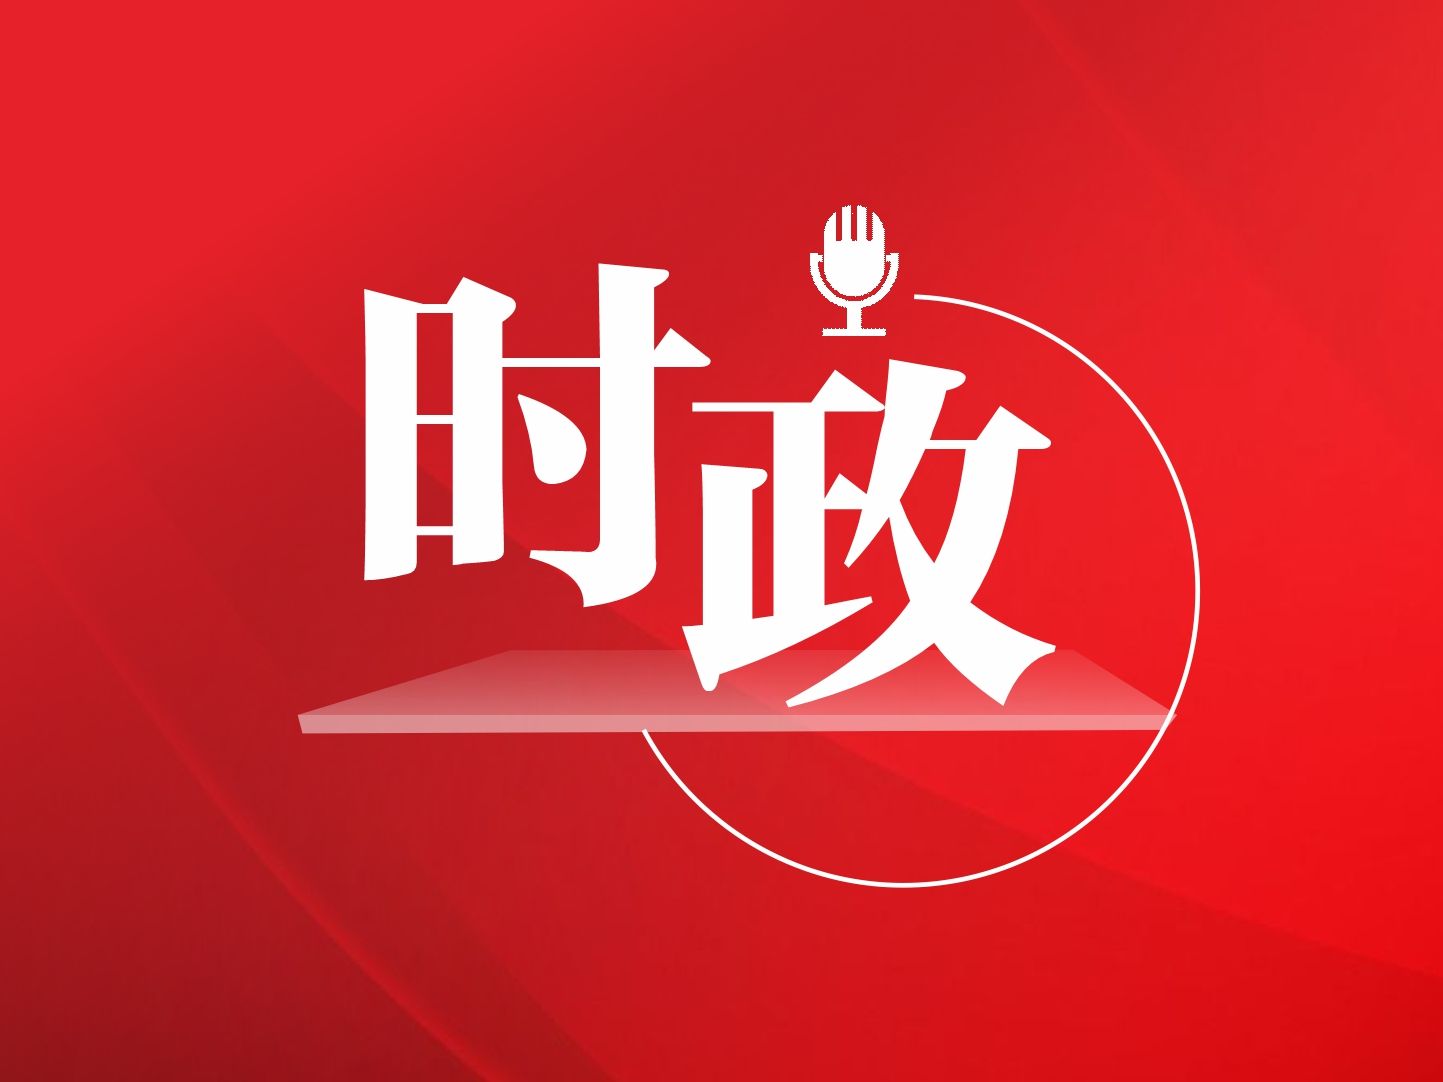 深圳召开各界人士庆祝中国共产党成立100周年座谈会  广泛凝聚开创美好未来的政治共识和磅礴力量